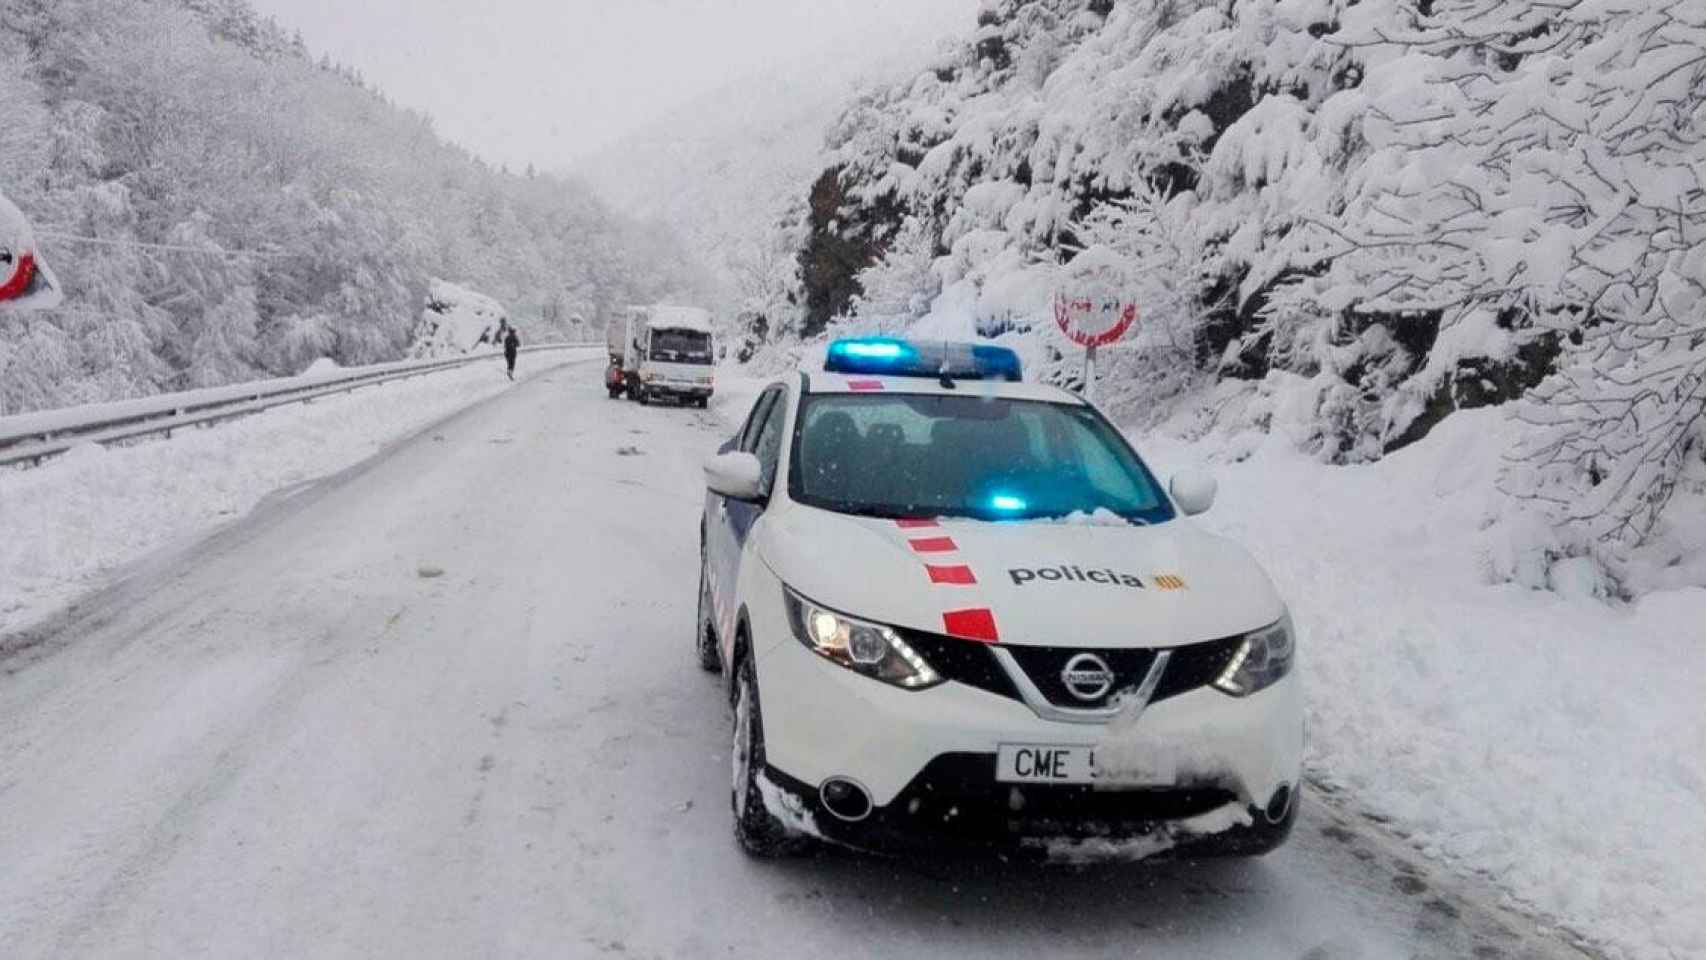 Los Mossos atienden una situación de emergencia en una de las carreteras nevadas de Cataluña / EUROPA PRESS